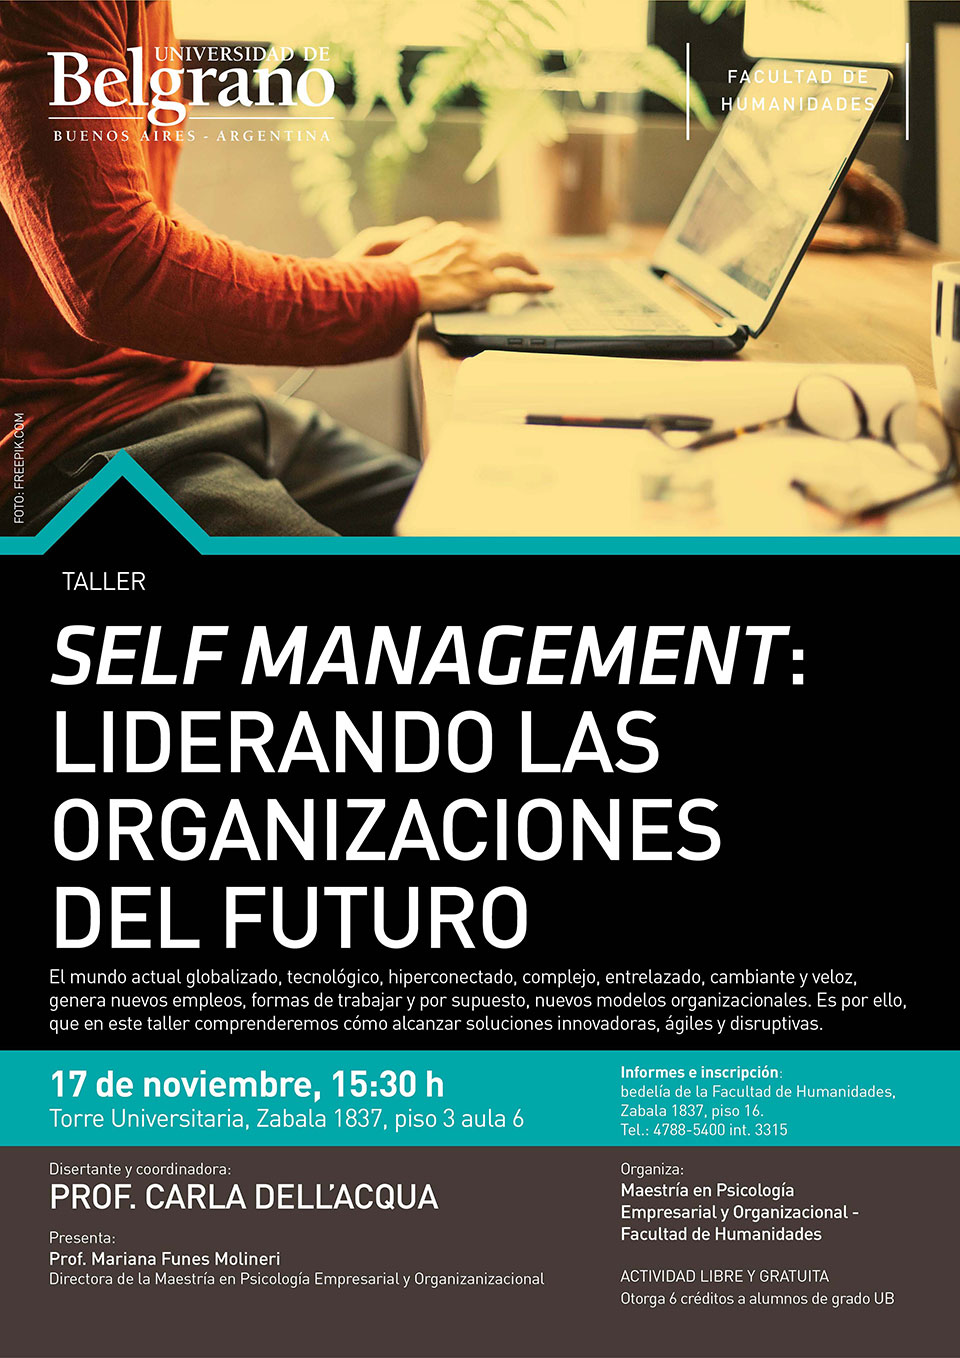 Self Management: Liderando Las Organizaciones del Futuro